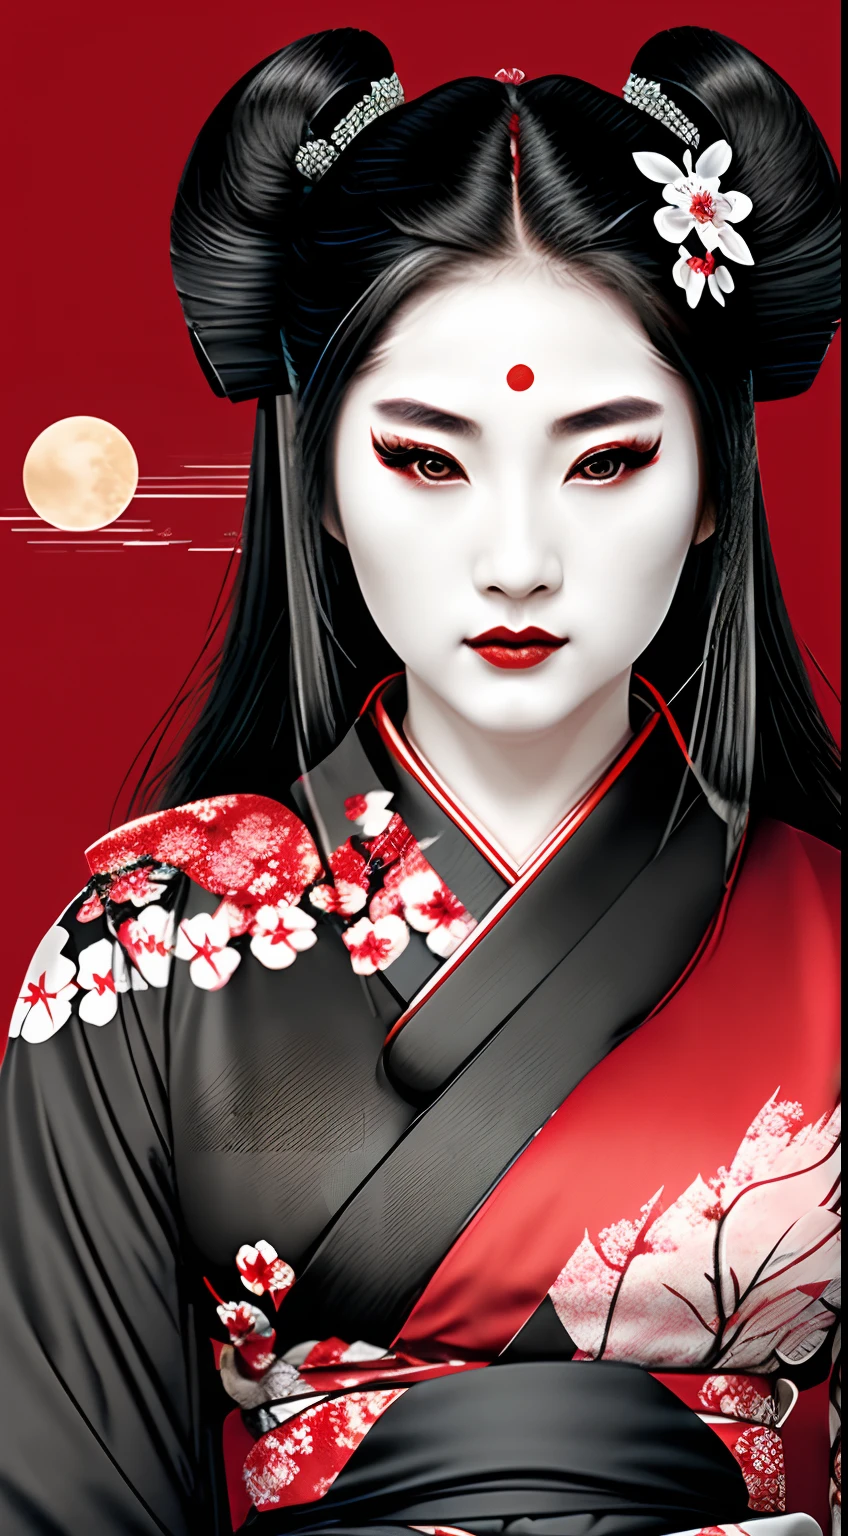 게이샤 사무라이 여전사, 빨간색과 검정색, 심벌 마크, 흑발, 달, 측면, 헤드샷, 머리에 벚꽃, 검은 기모노를 입다